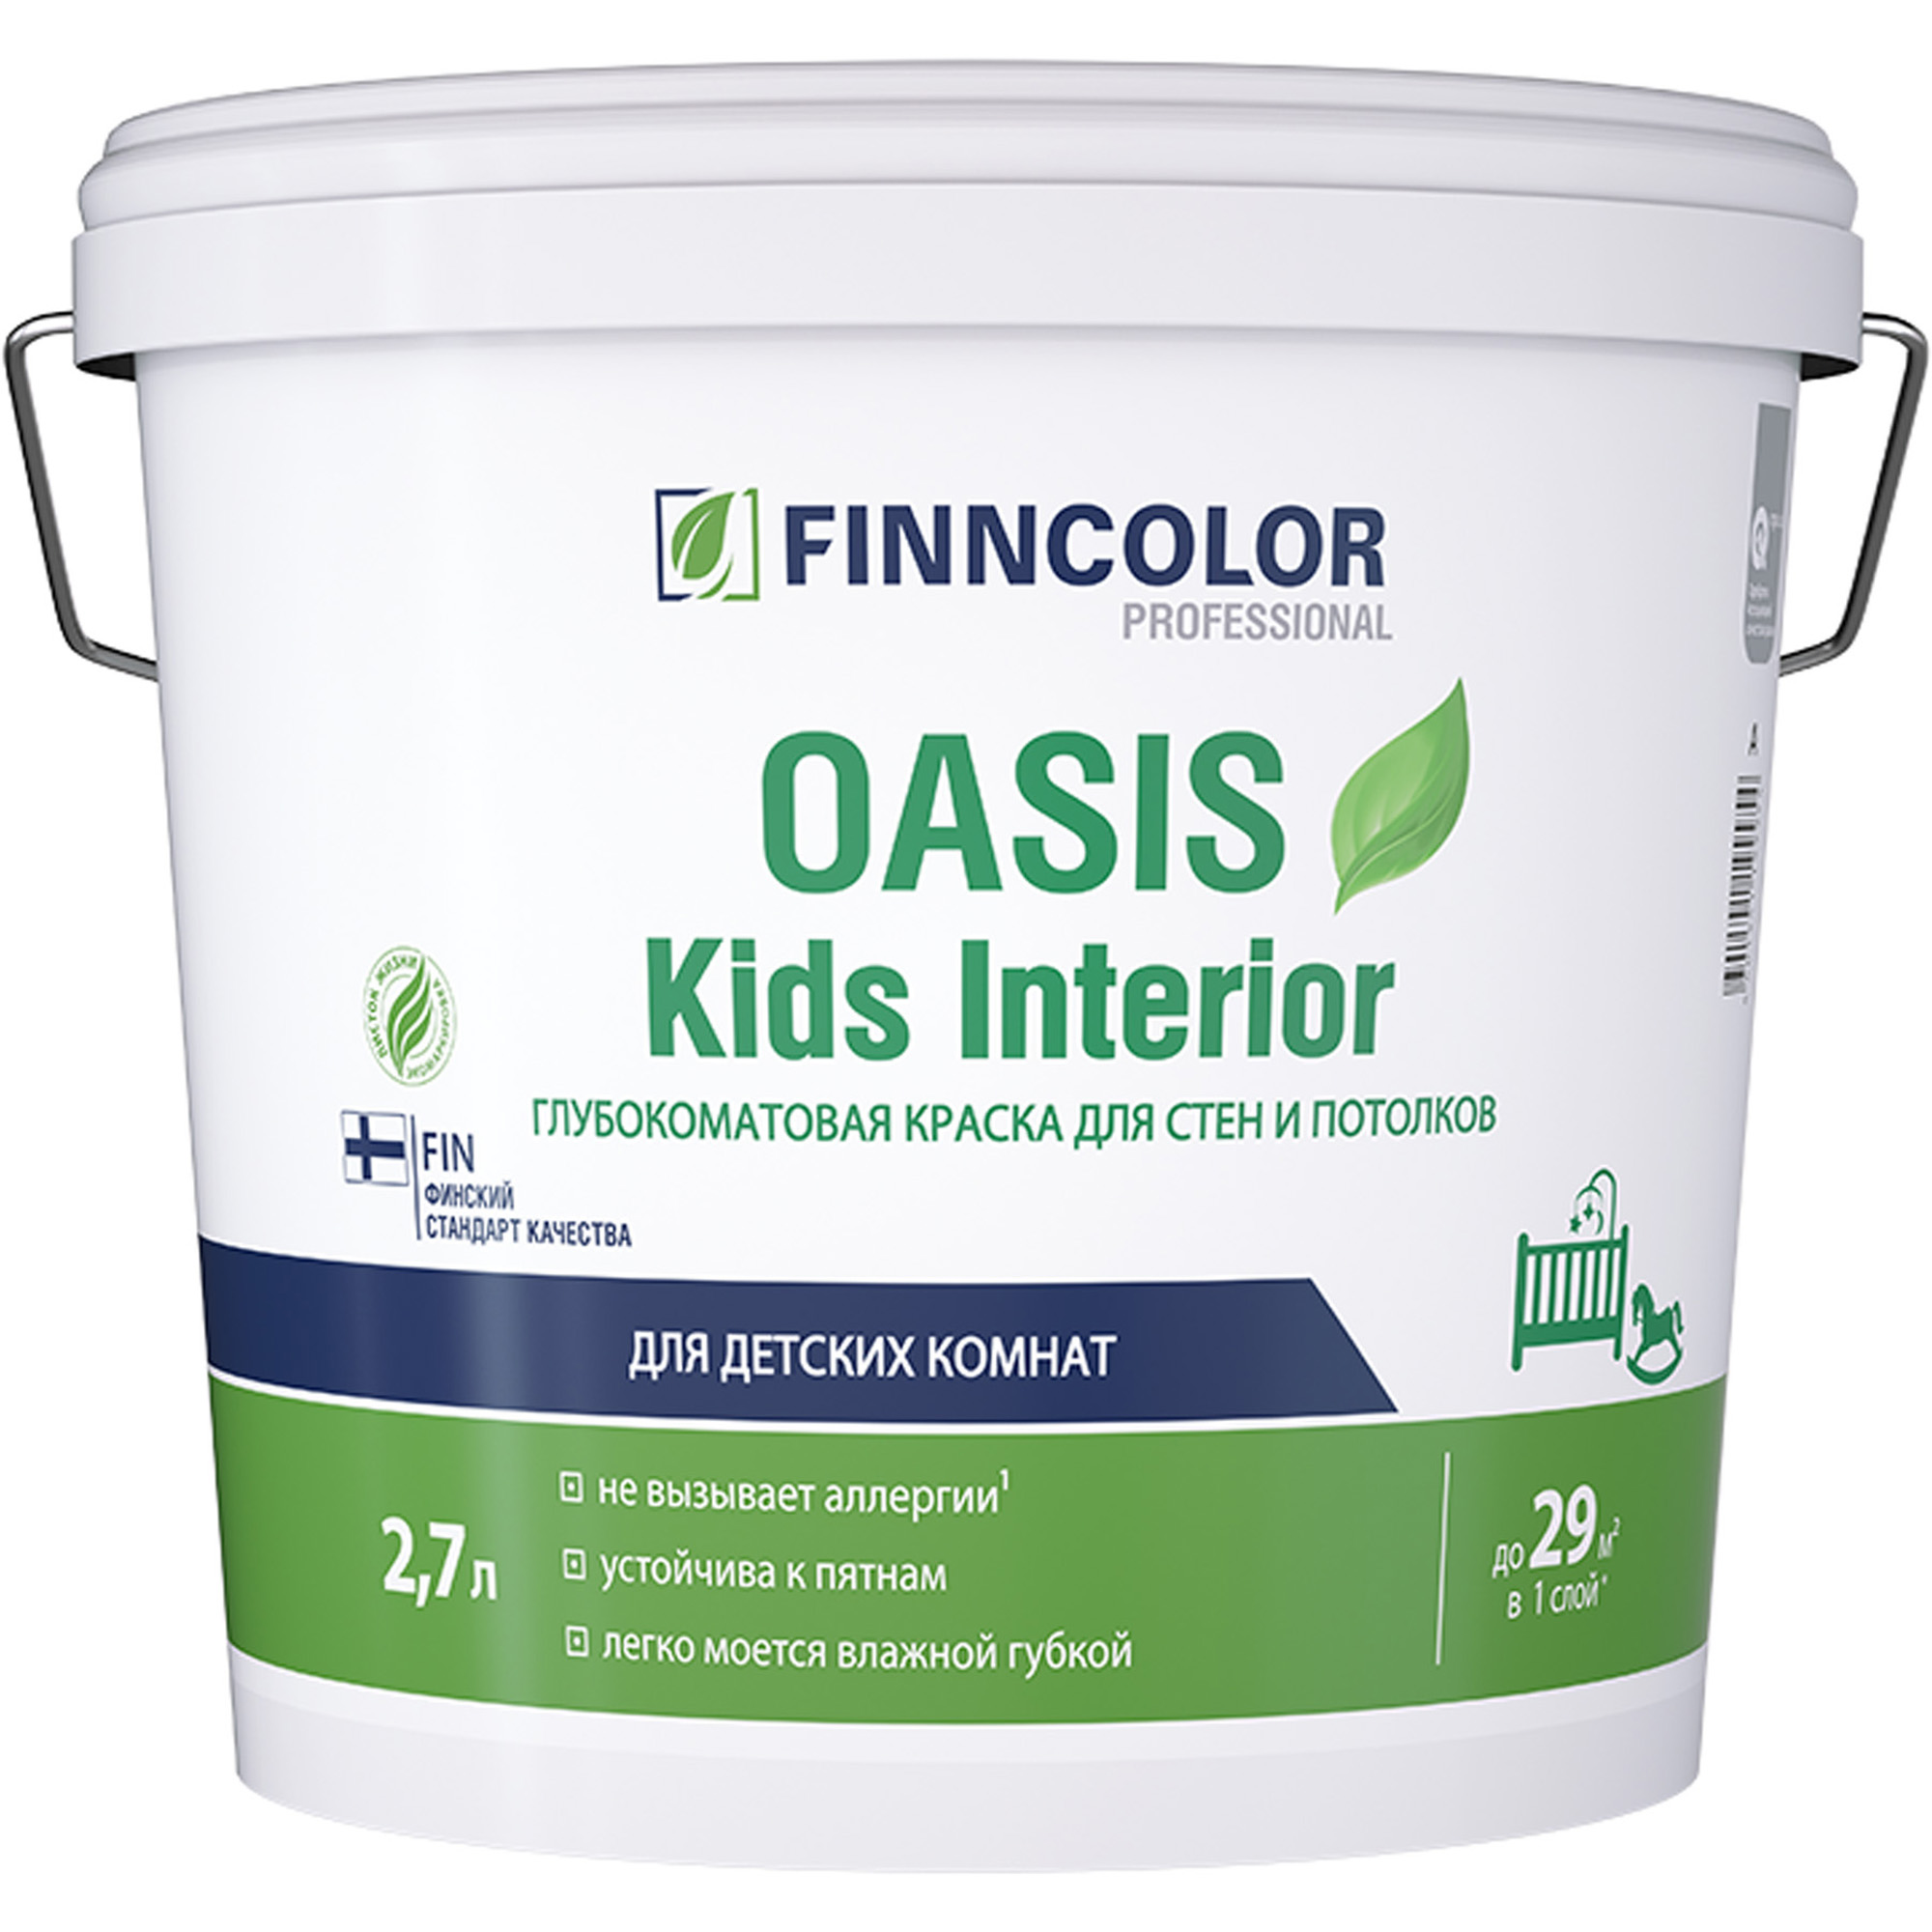 Купить Краска для детских finncolor Oasis kids interior база A белая глубокоматовая 2.7 л